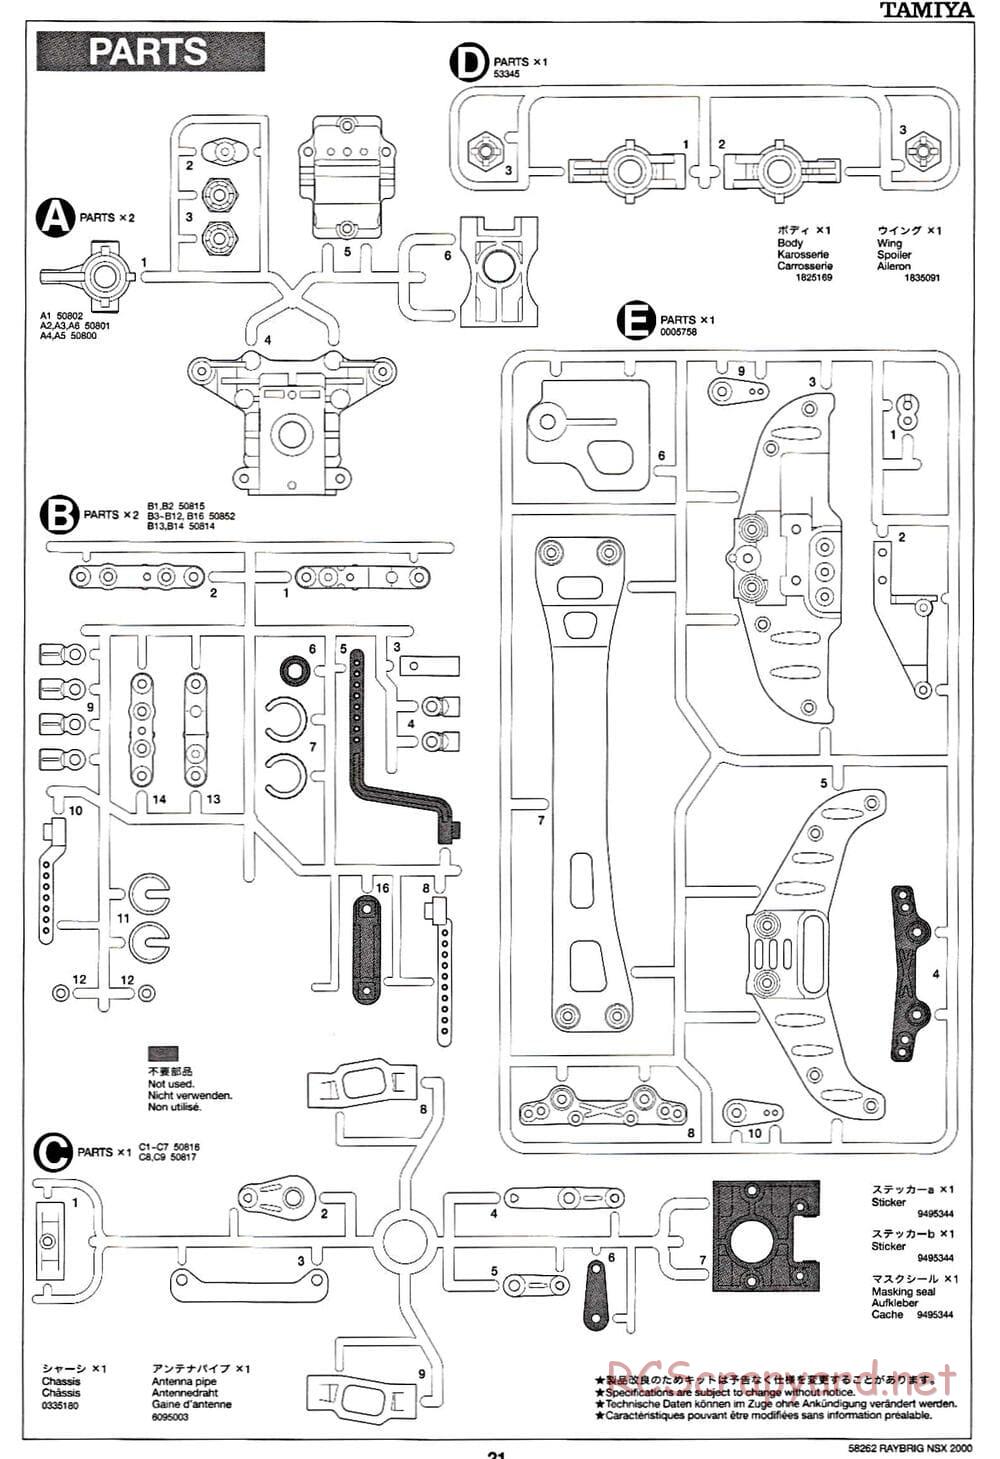 Tamiya - Raybrig NSX 2000 - TB-01 Chassis - Manual - Page 21